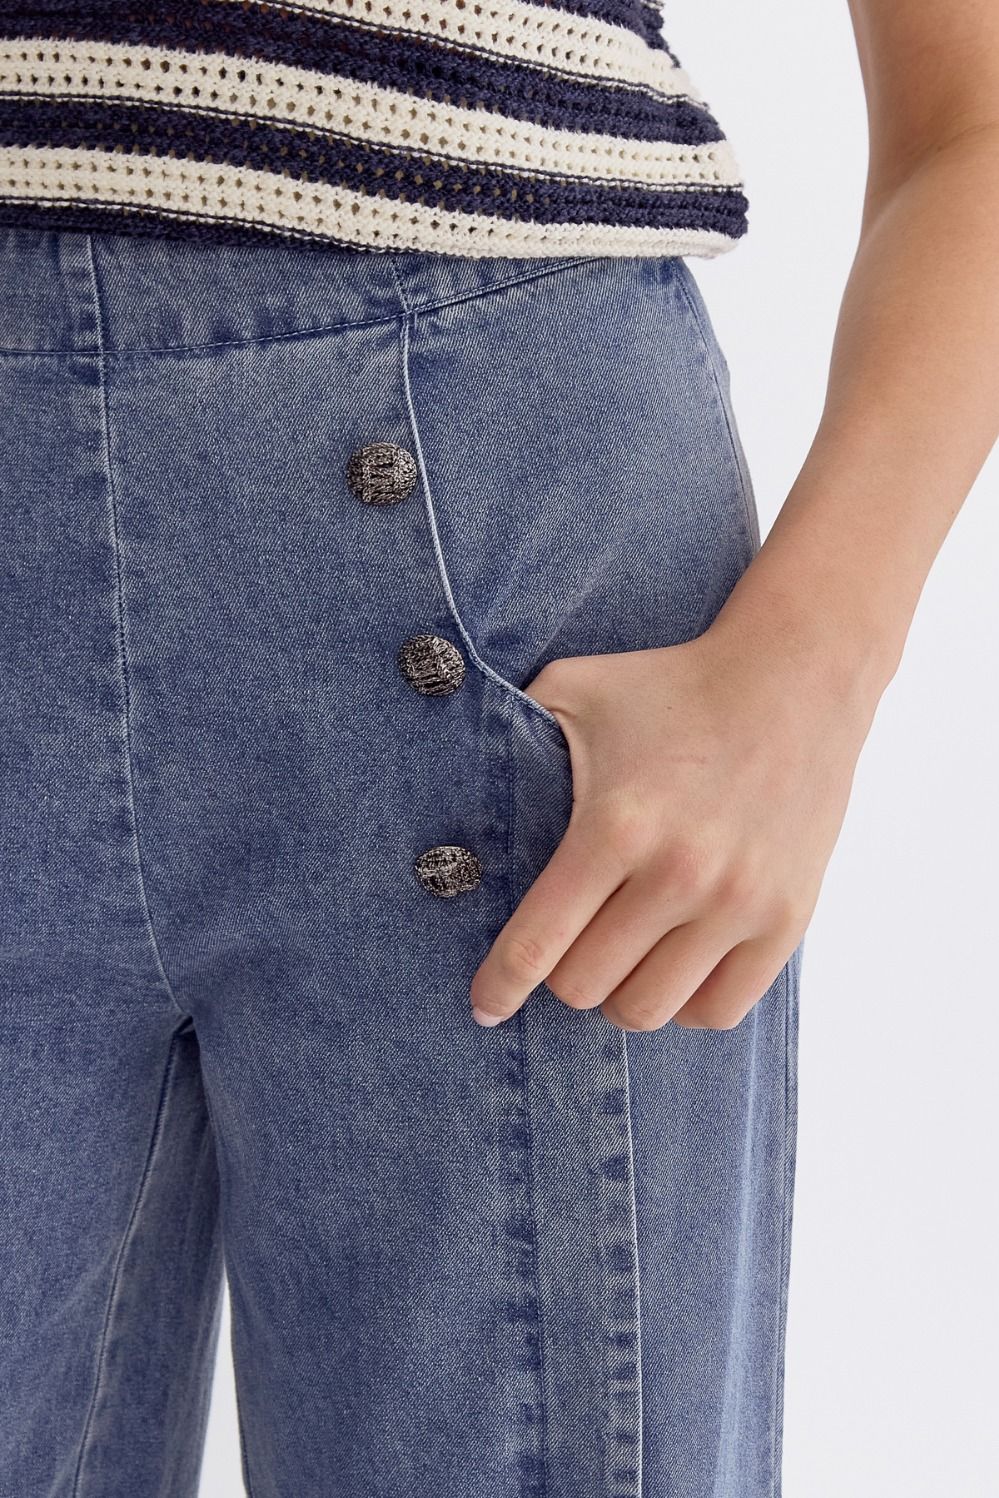 Sailor Button detail pants